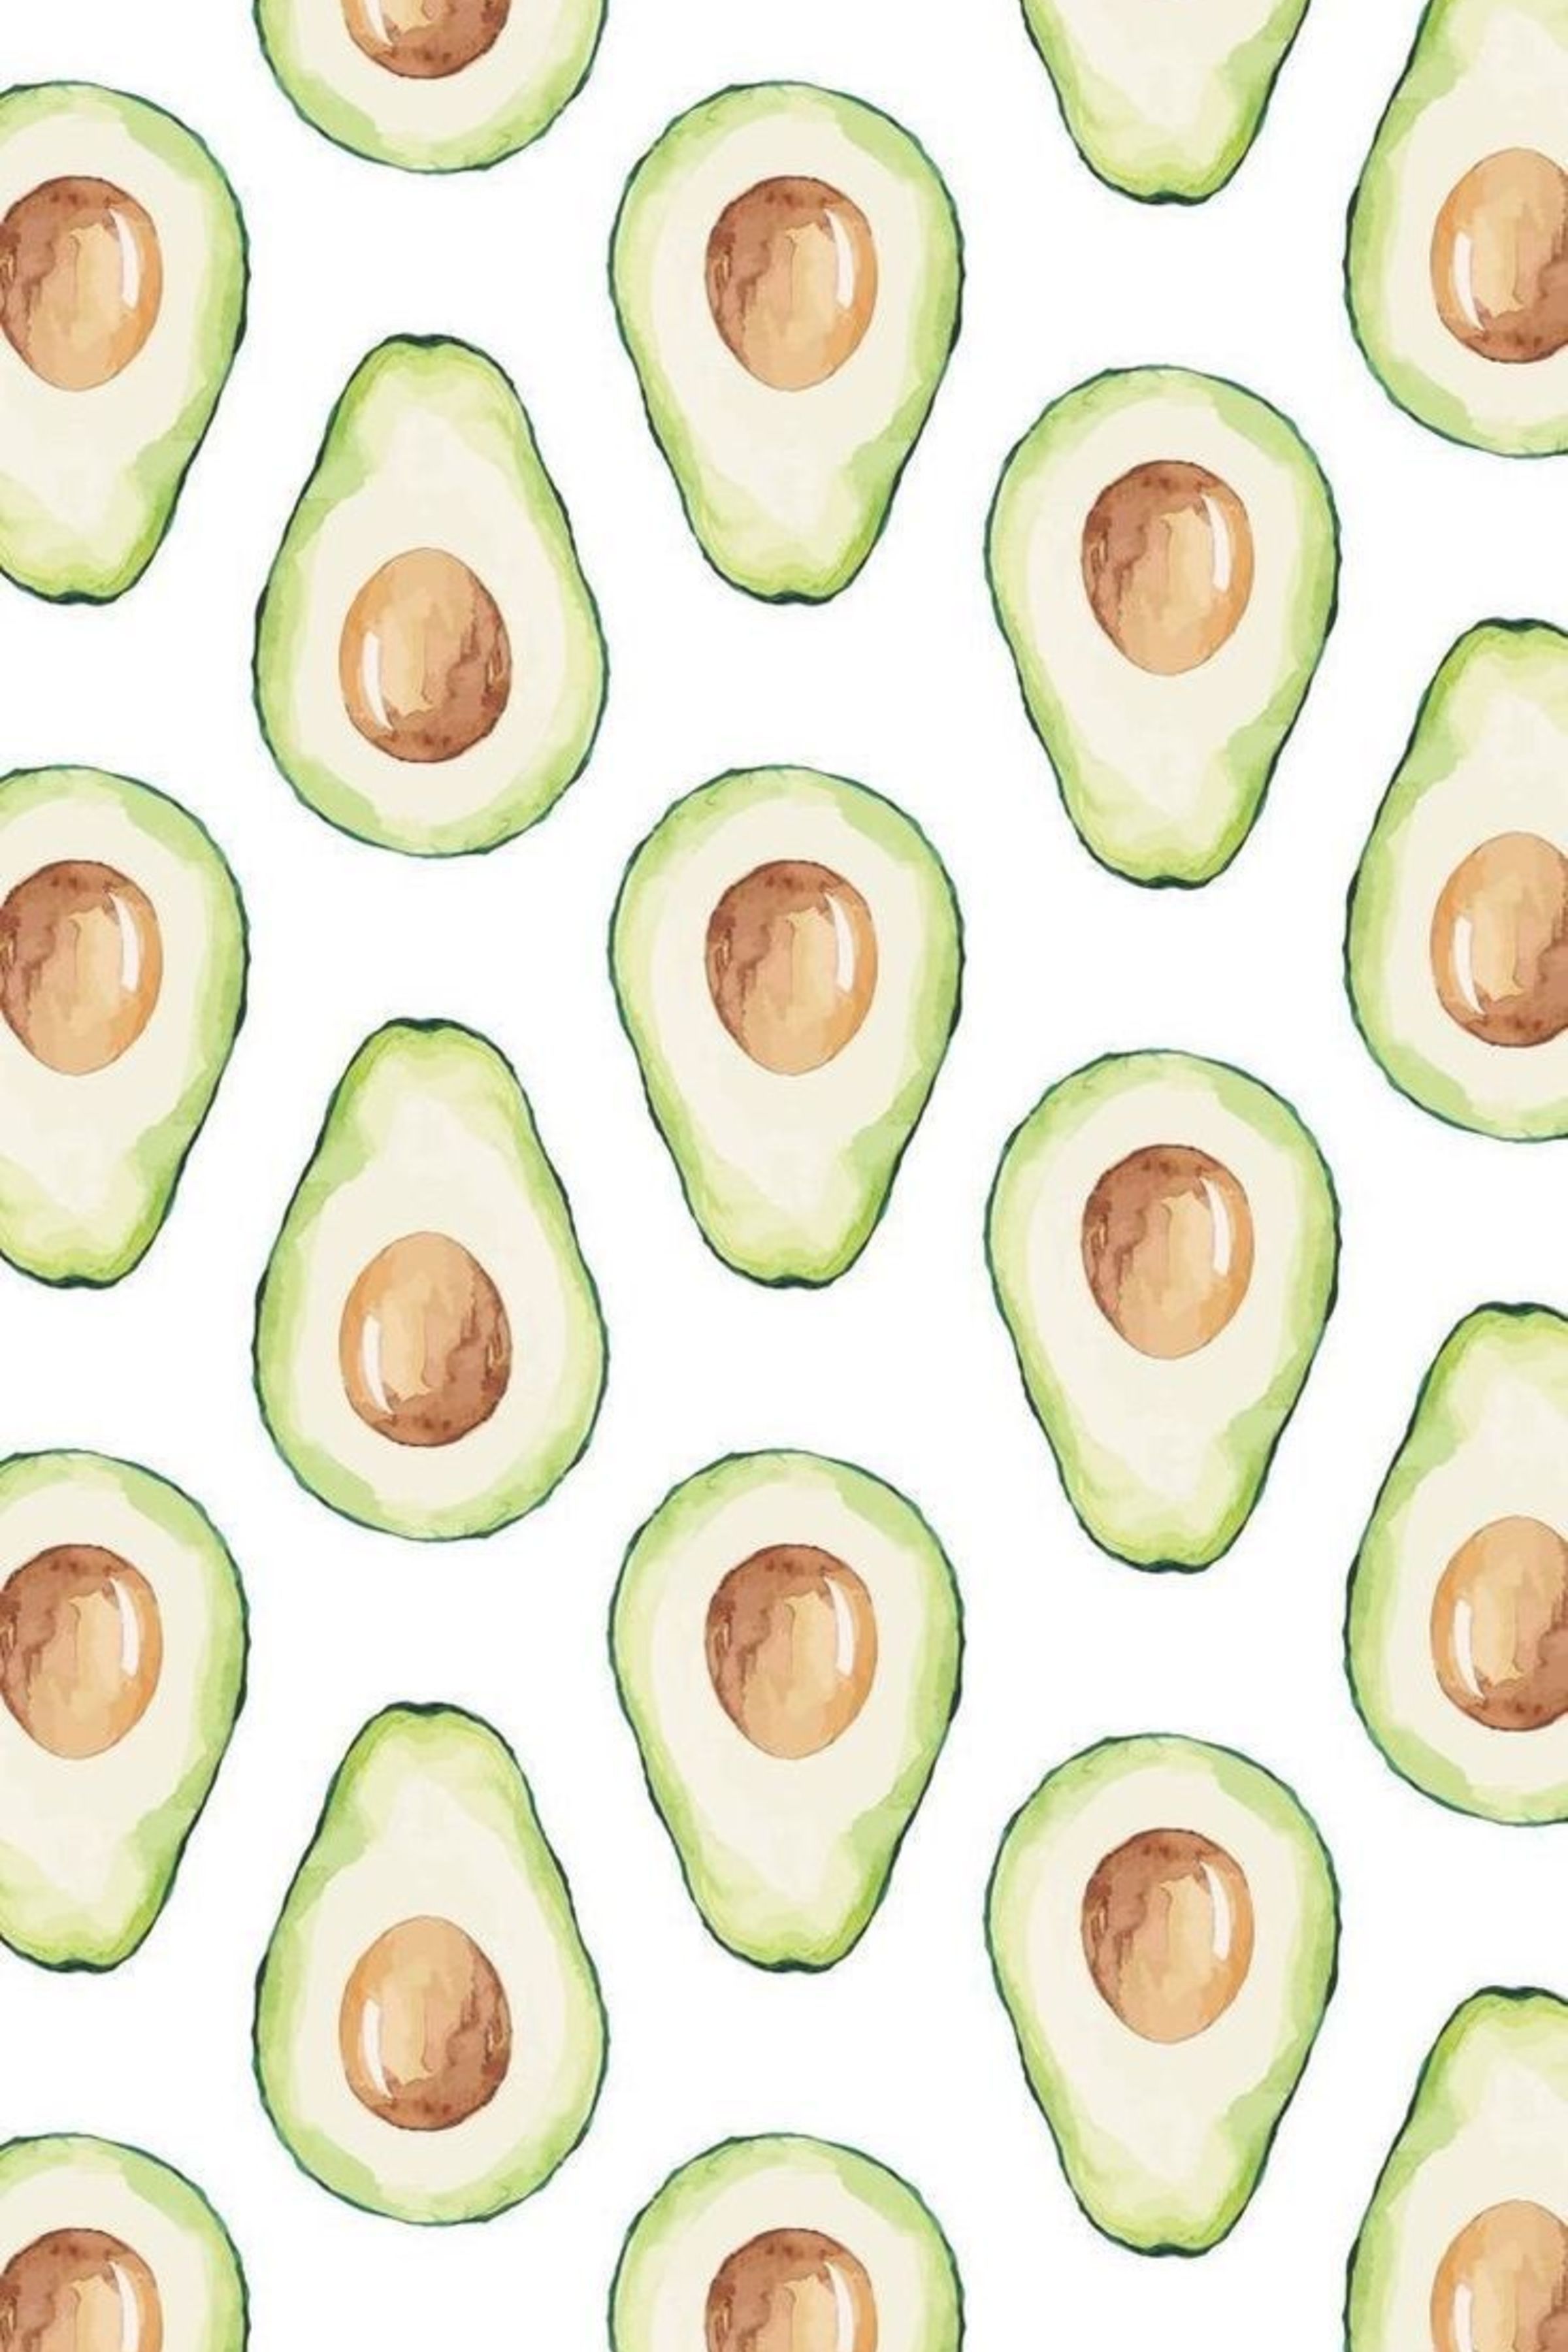 Avocado Day Wallpaper